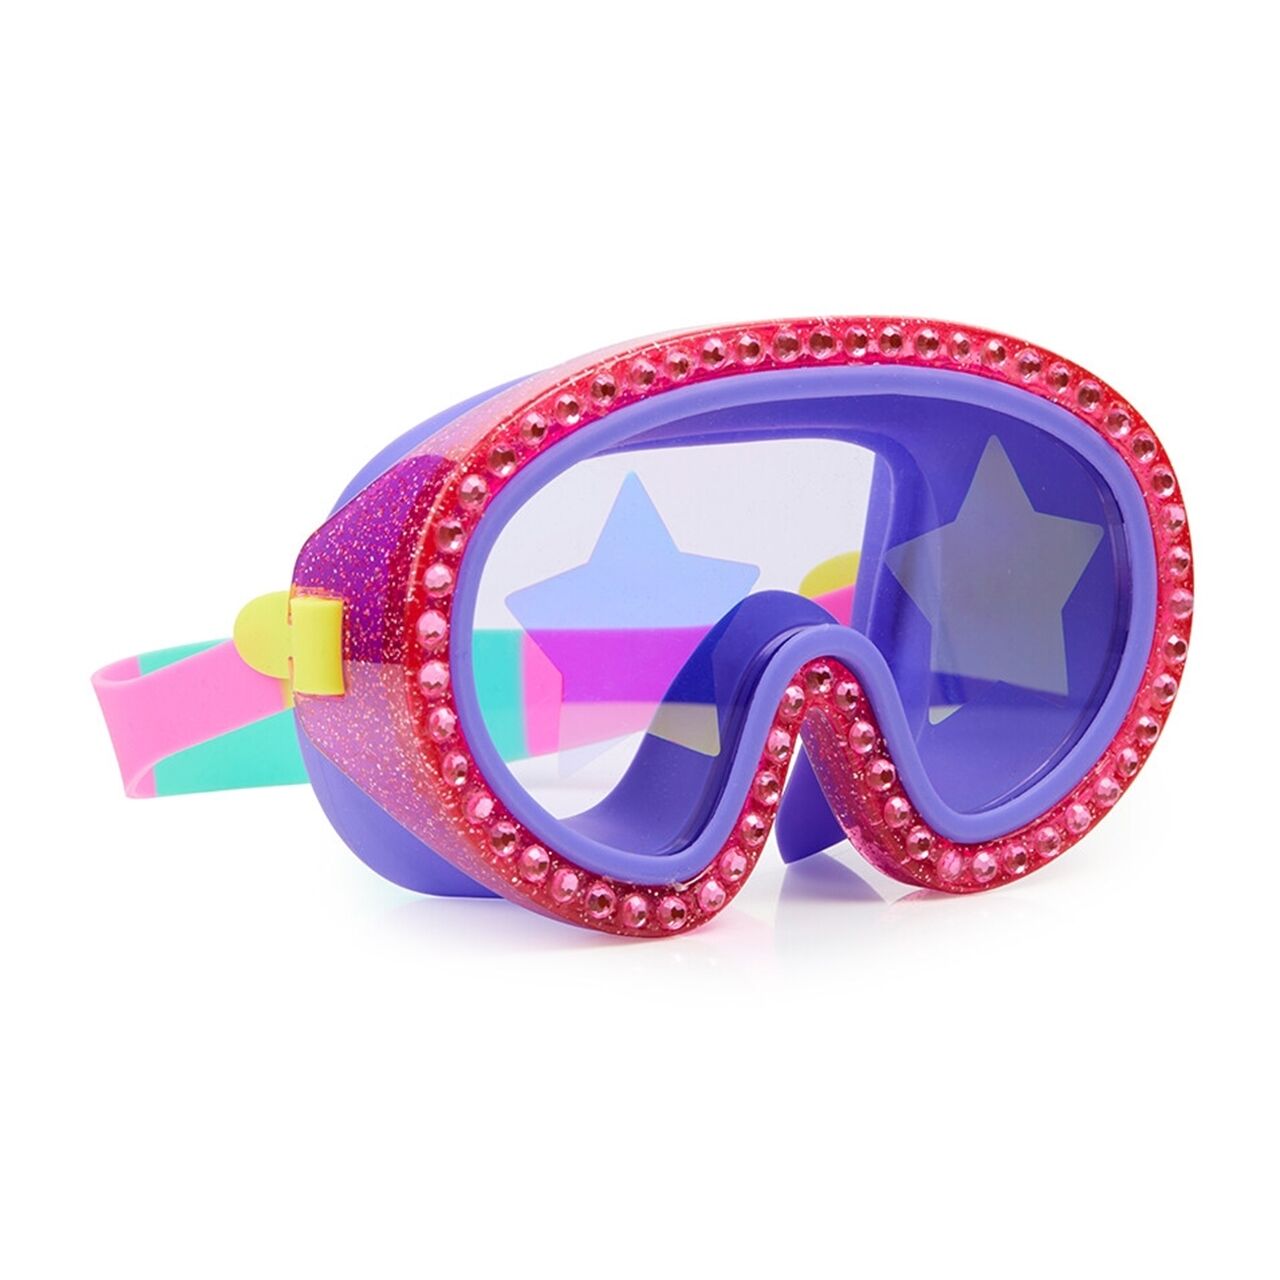 Bling2o Çocuk Deniz Gözlüğü - Rock Star Glitter Ma